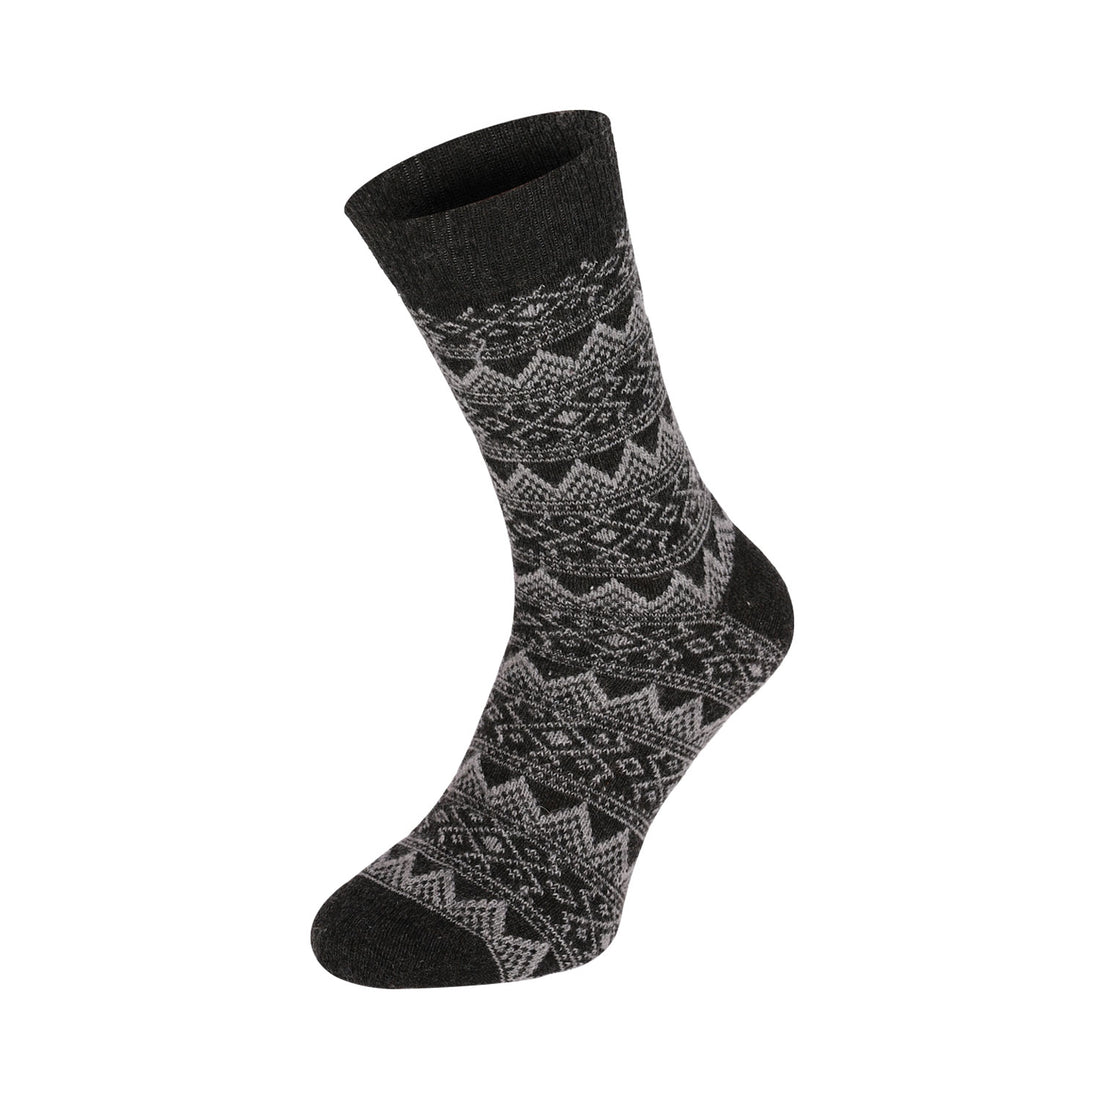 ChiliLifestyle Socken Wool Classic Schaf Wolle Damen Herren Warm 2 Paar